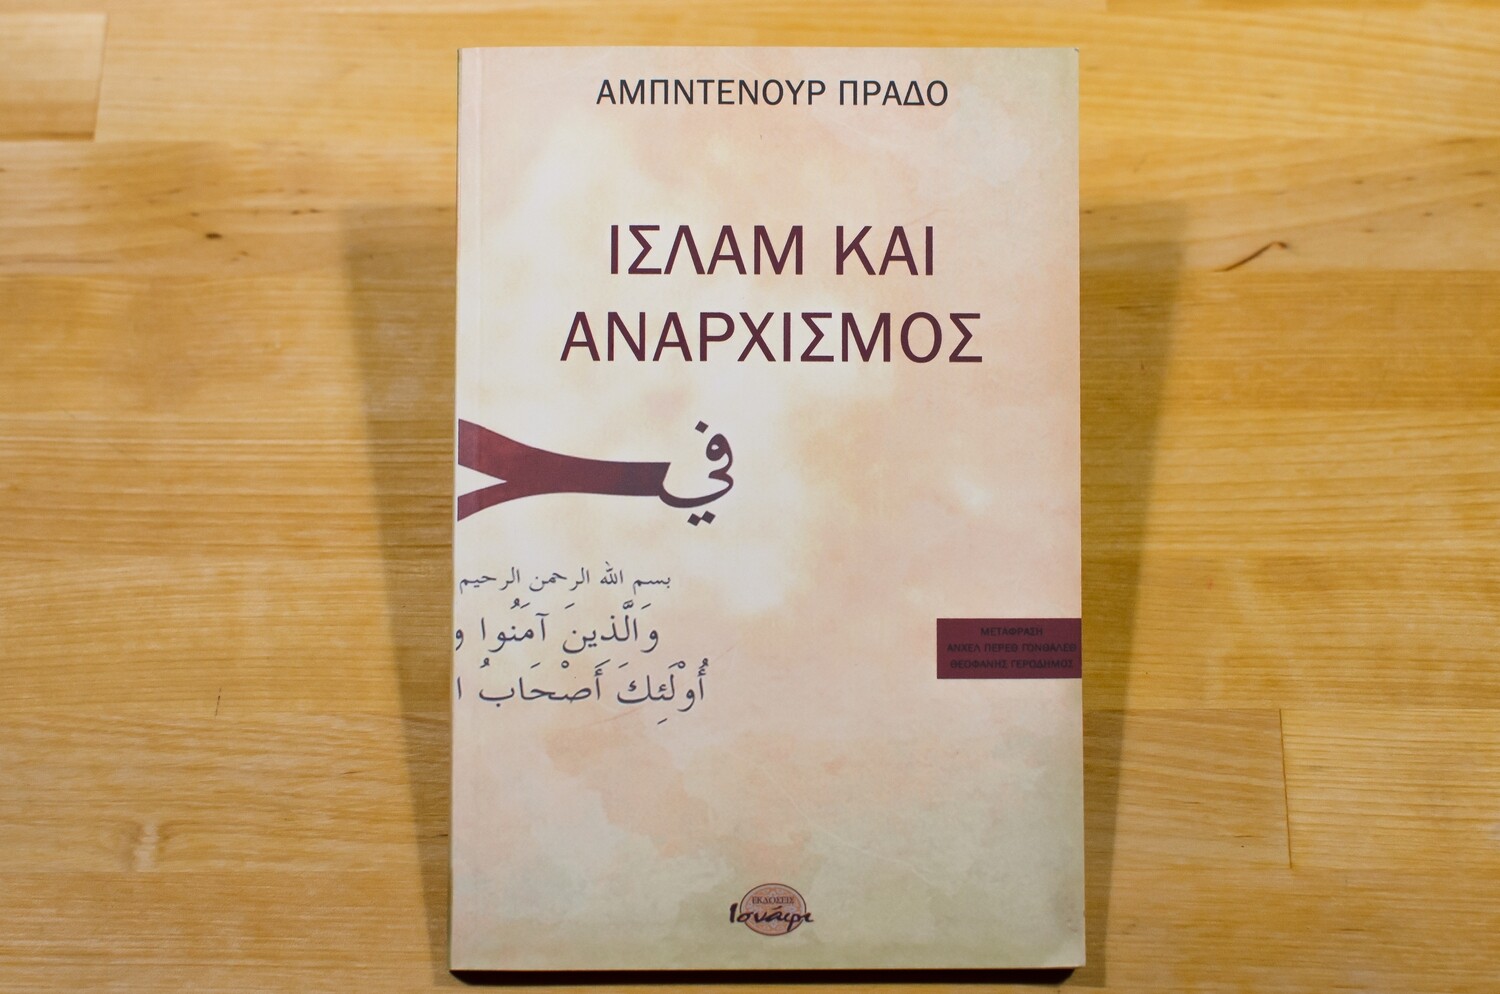 Ισλάμ και αναρχισμός, Abdennur Prado, Εκδόσεις Ισνάφι, 2014